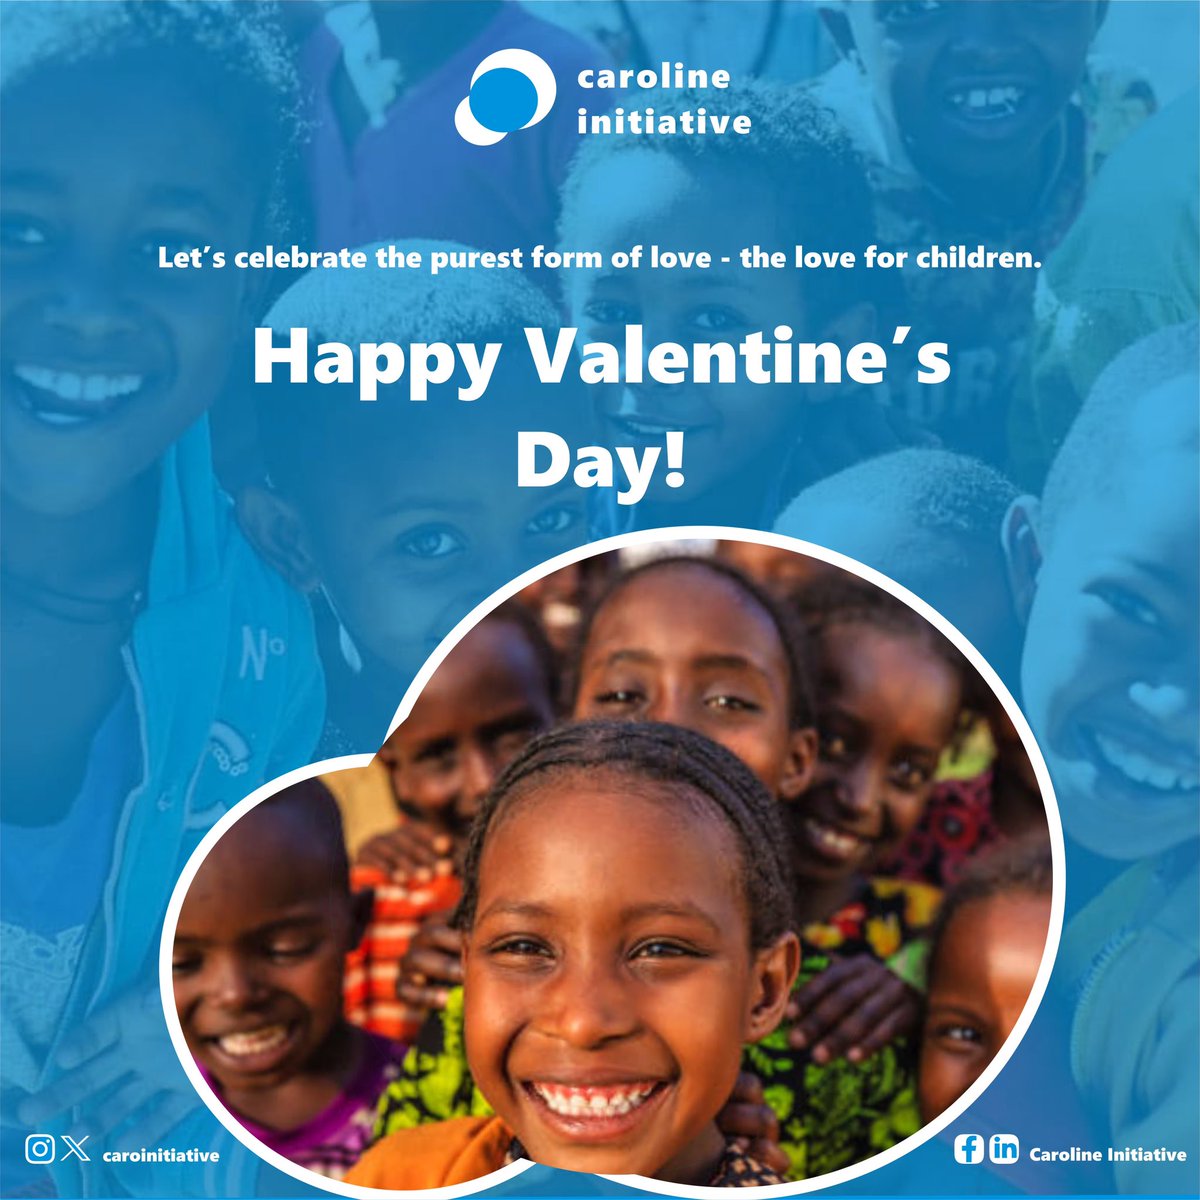 Let's celebrate children in every way we can. Happy Valentines Day!

#CarolineInitiative #HappyValentinesDay #ValentinesDay #StValentines #February14th #ChildWelfare #EmpowerChildren #ChildAdvocacy #SupportKids #DonateForKids #ChildAid